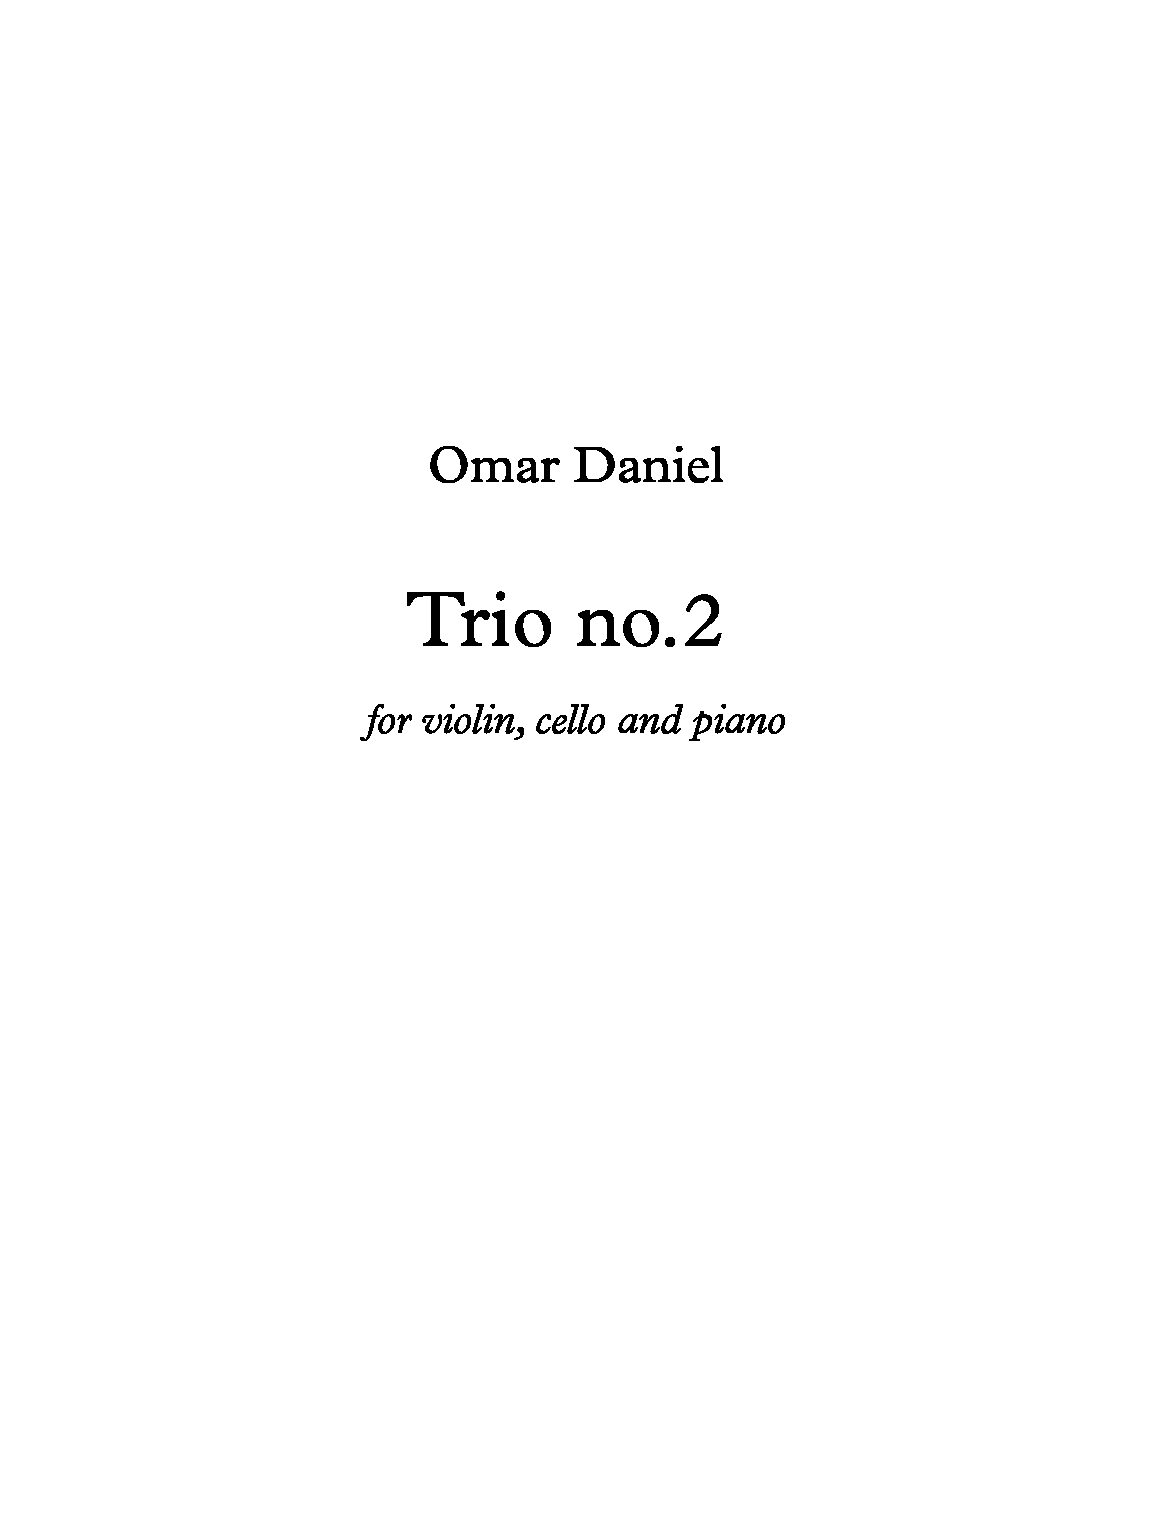 Trio_no_2_score-Omar-Daniel-6p